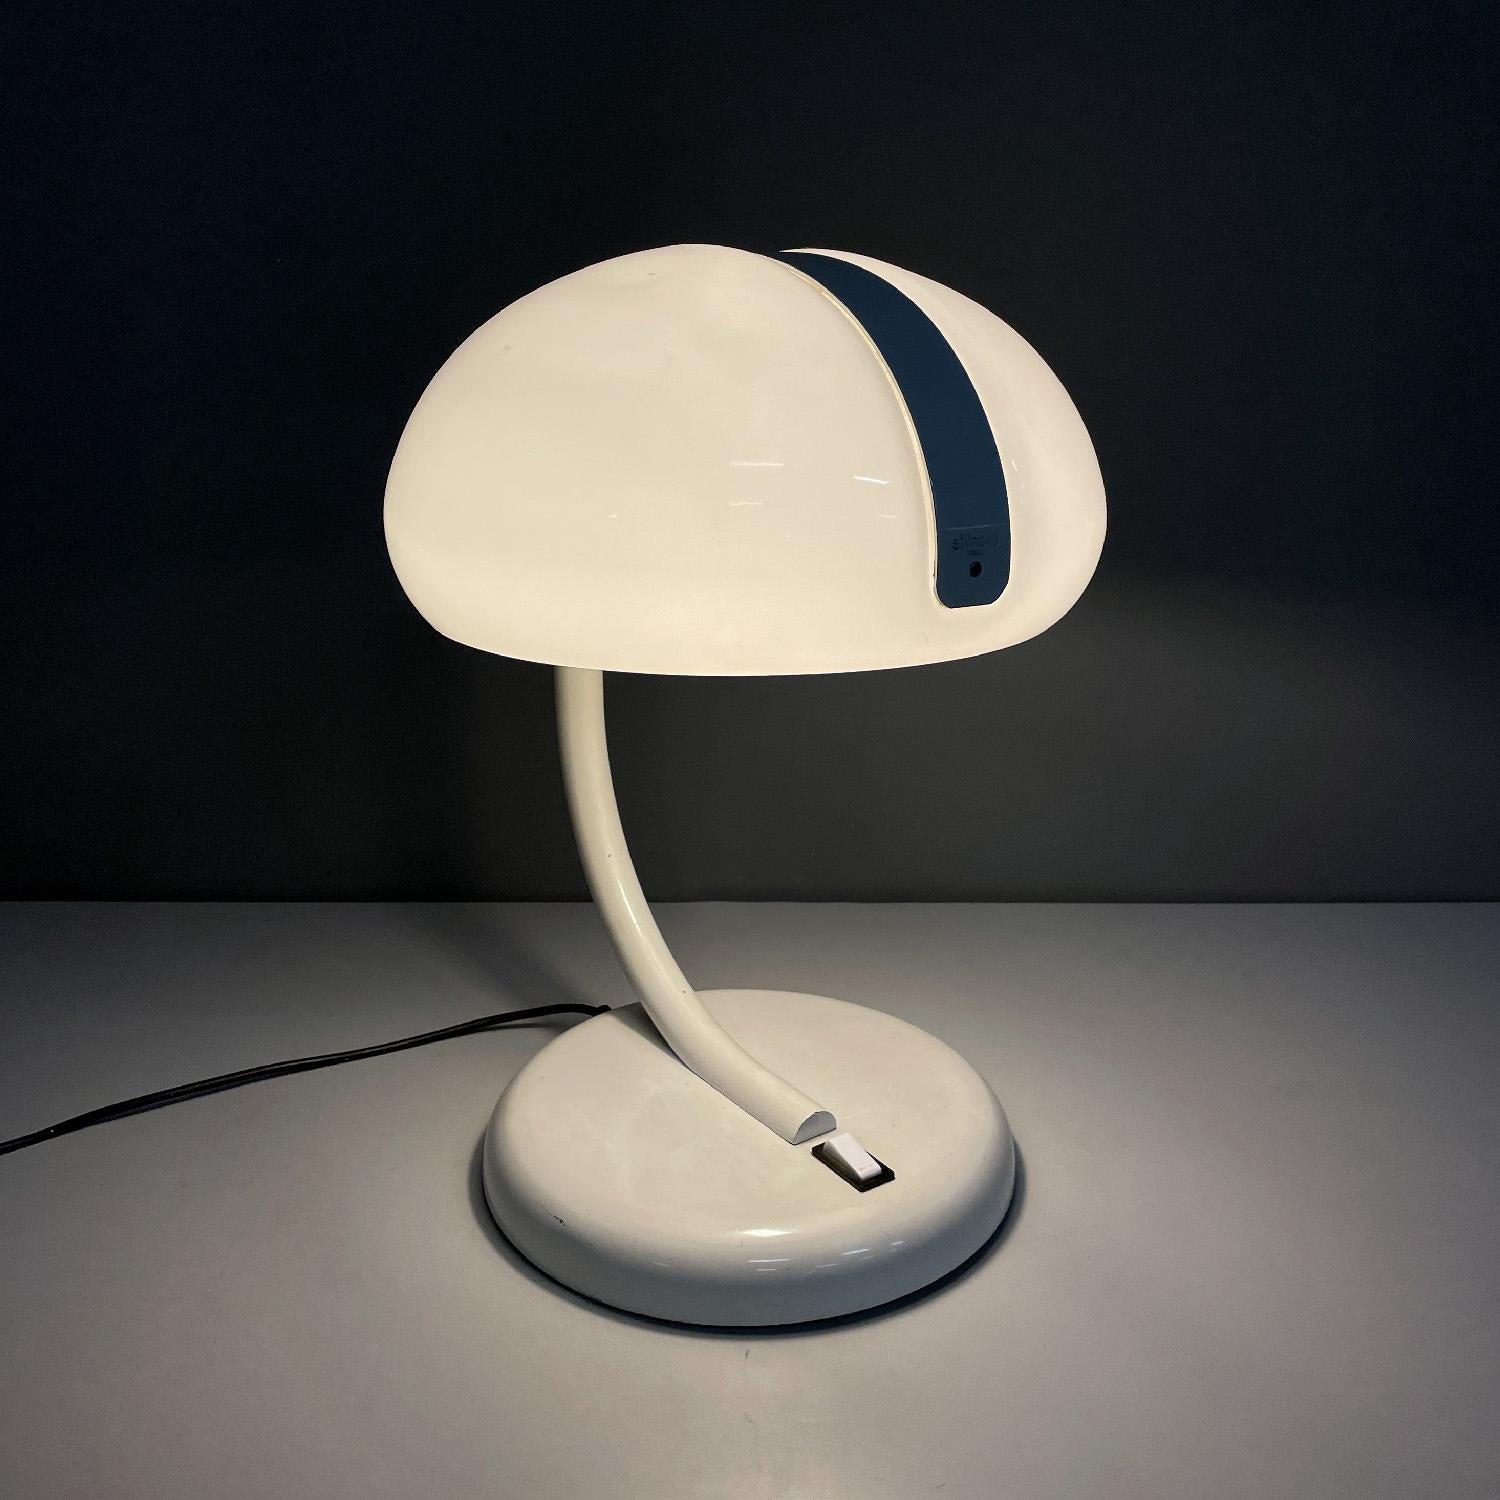 Lampe de table ronde blanche italienne moderne du milieu du siècle dernier par Stilnovo, années 1960
Lampe de table à base ronde. L'abat-jour en plexiglas blanc est en forme de dôme, il est embrassé dans sa partie supérieure par une bande de métal